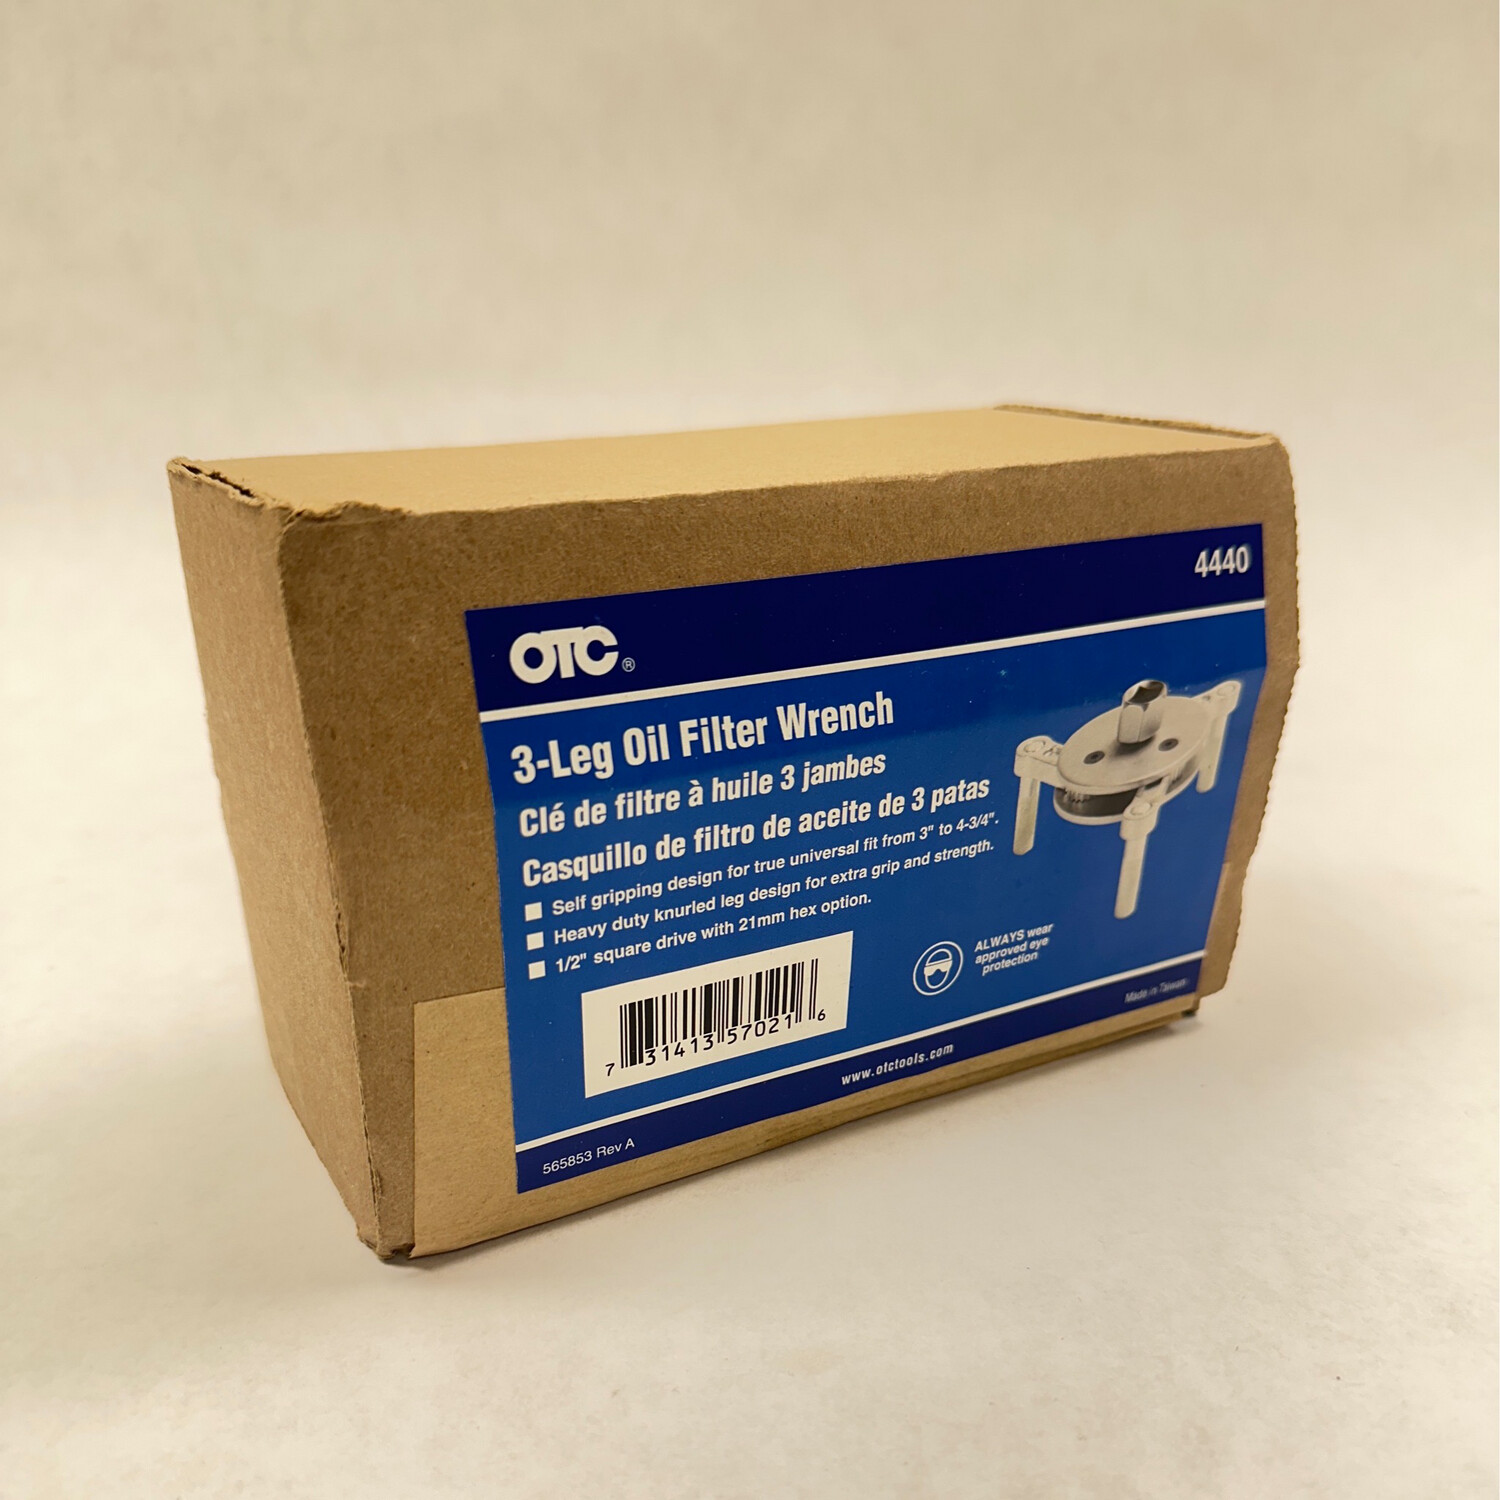 OTC 3-Leg Oil Filter Wrench, 4440